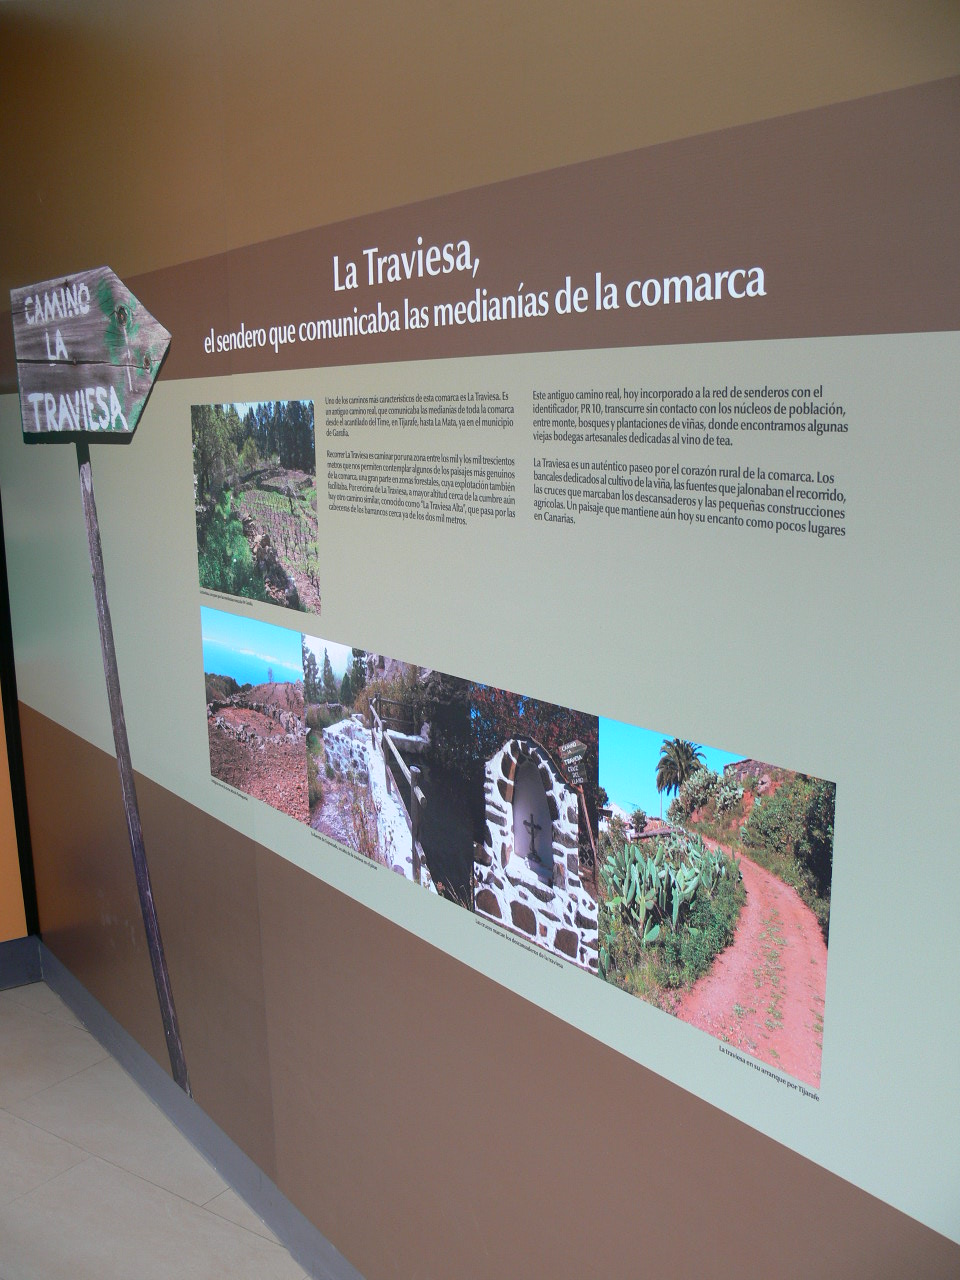 Centro de Interpretación Ambiental de Puntagorda, La Palma